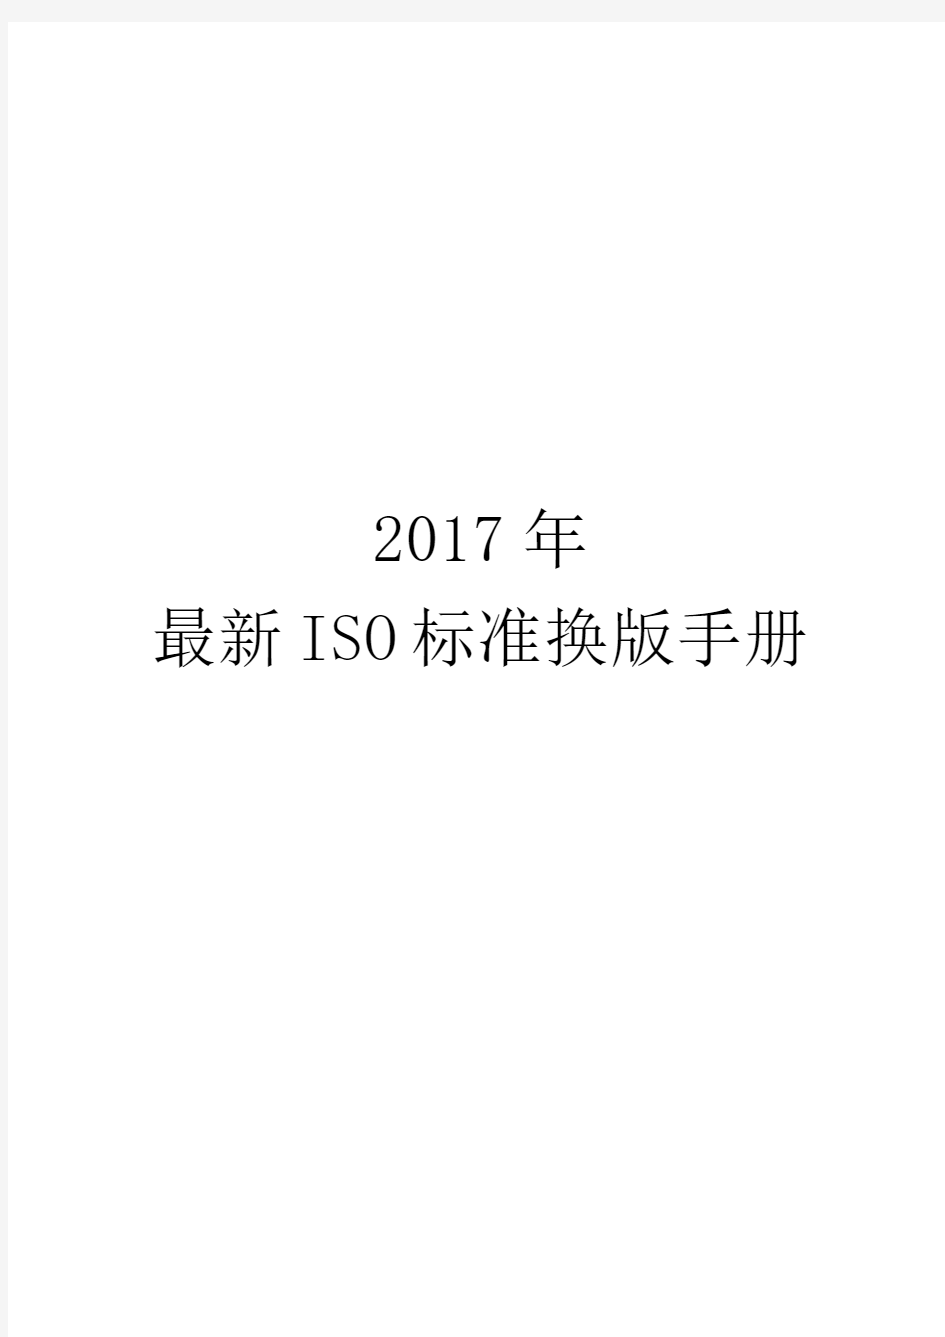 2017年最新ISO标准换版手册 - 副本